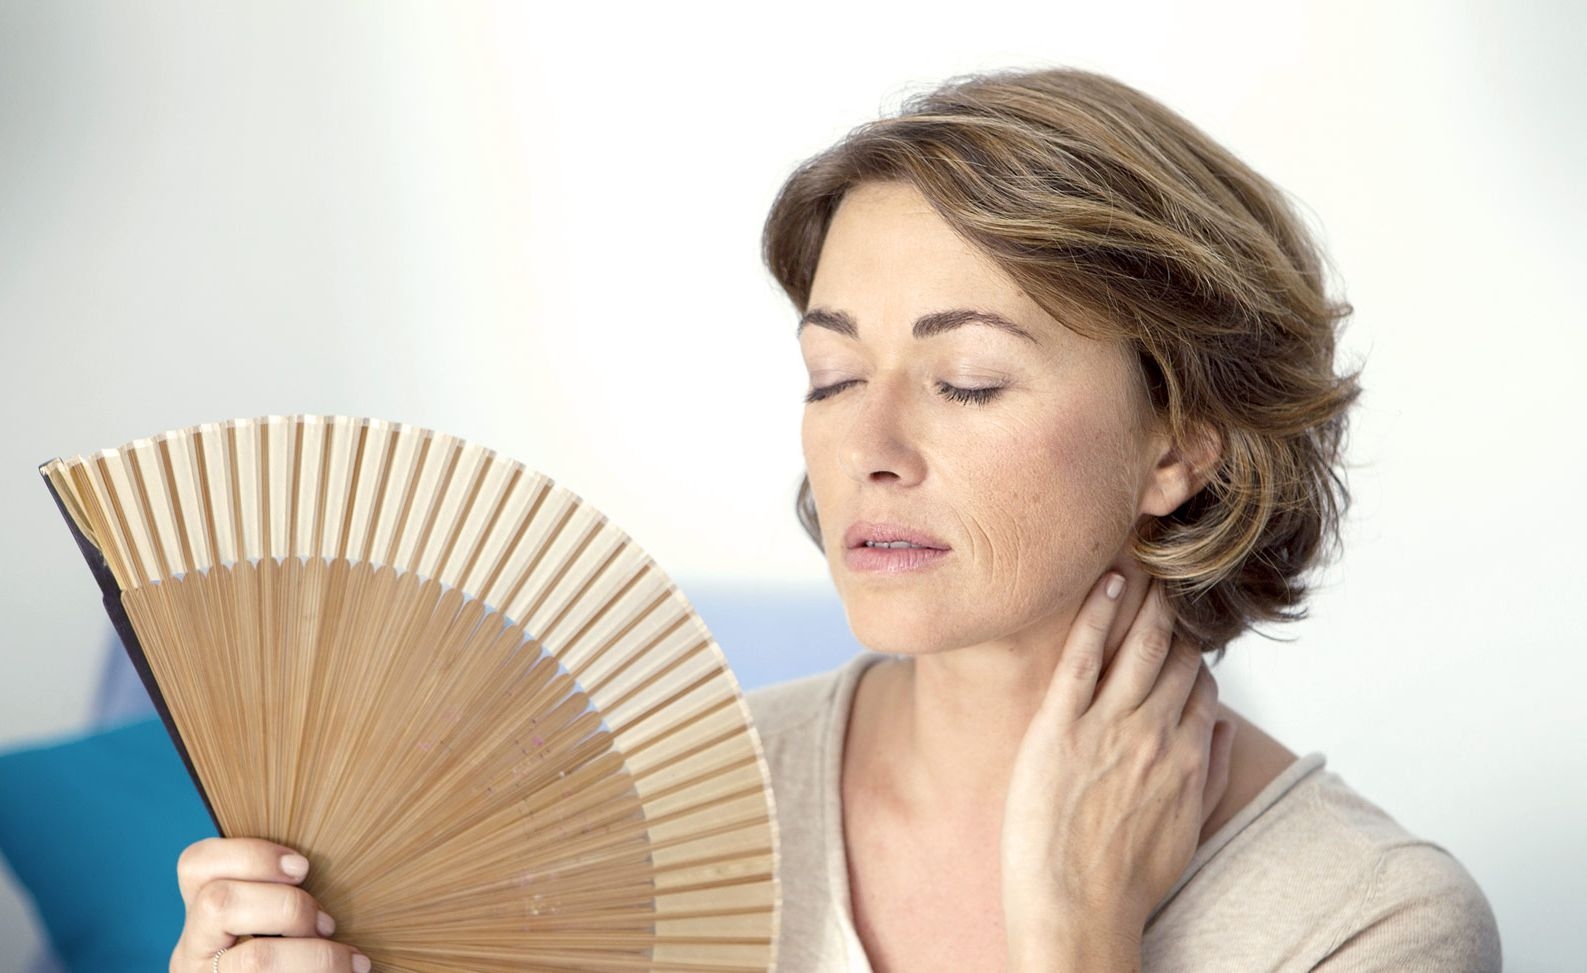 Vello facial menopausia